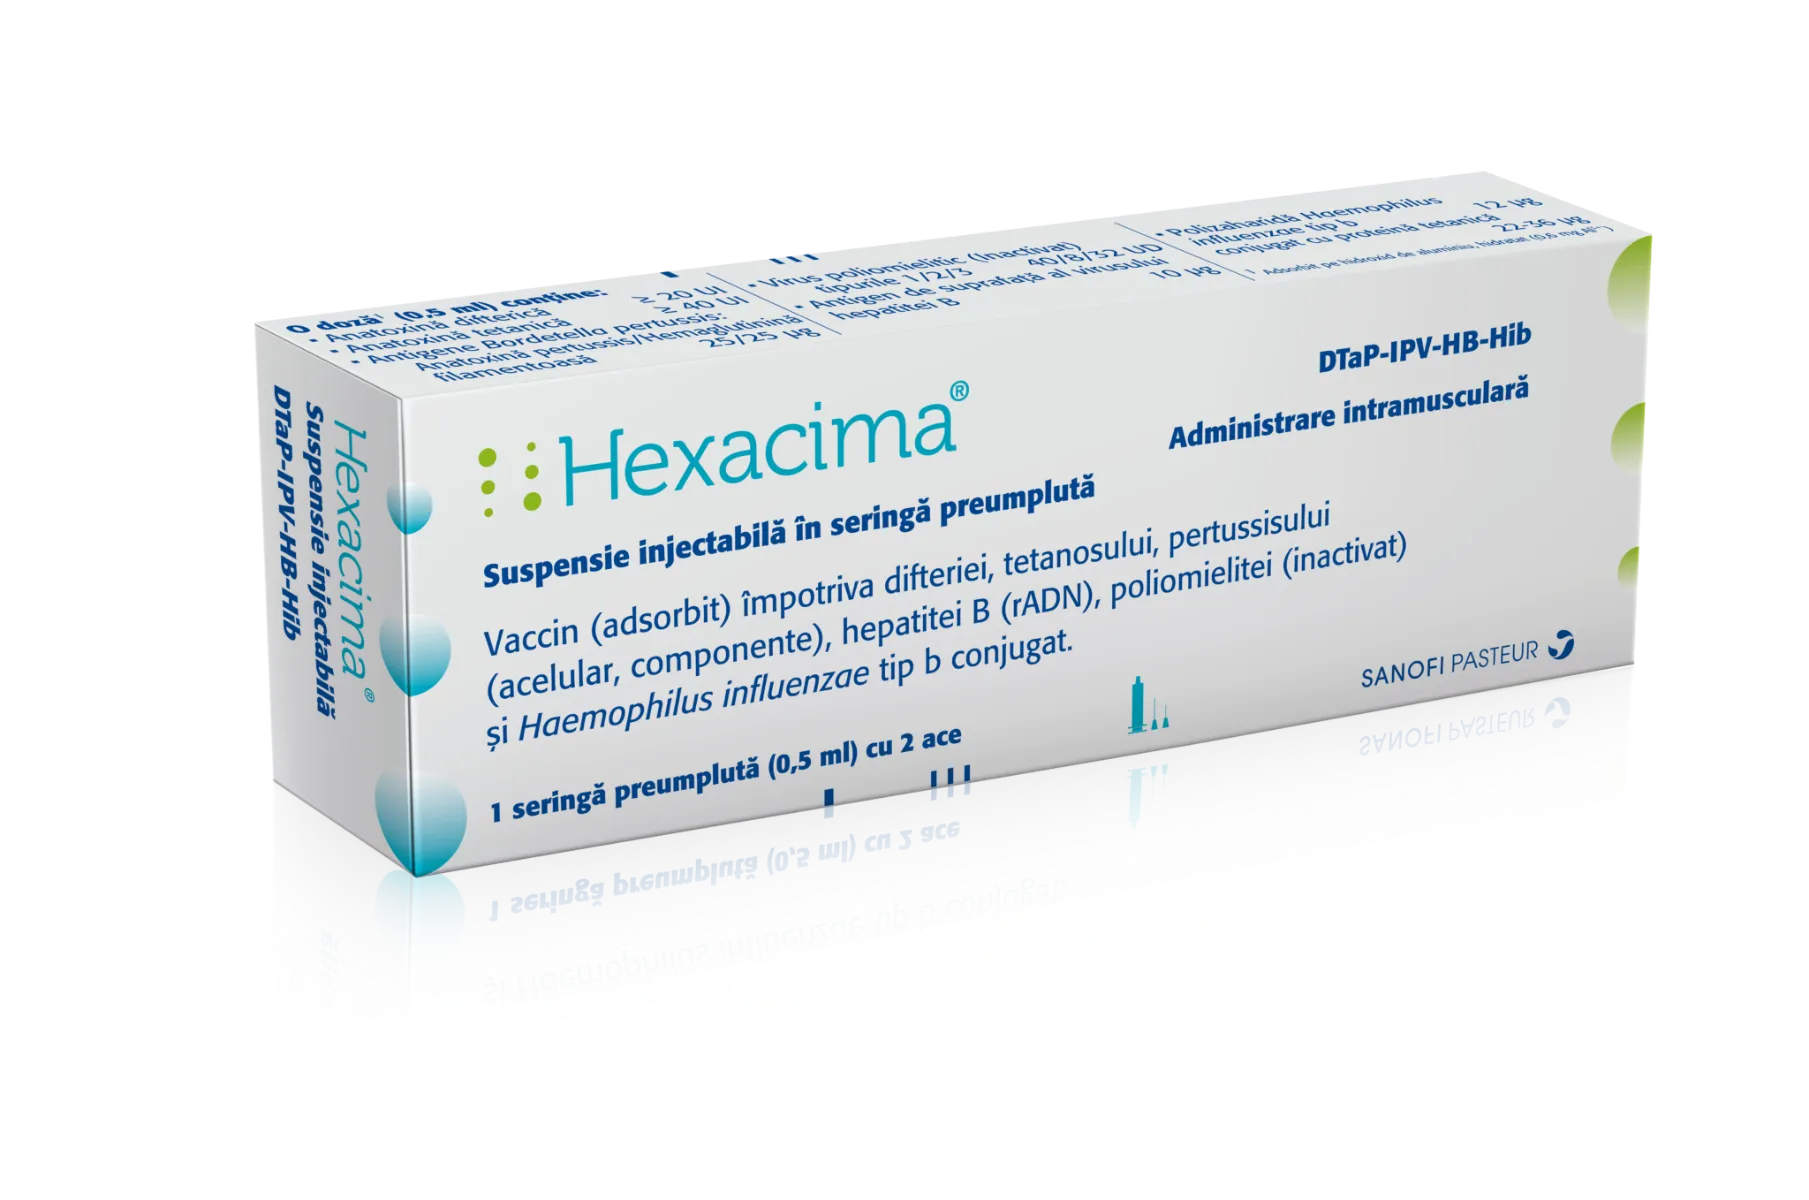 Hexacima 0.5ml suspensie injectabila, 1 seringa preumpluta, Sanofi